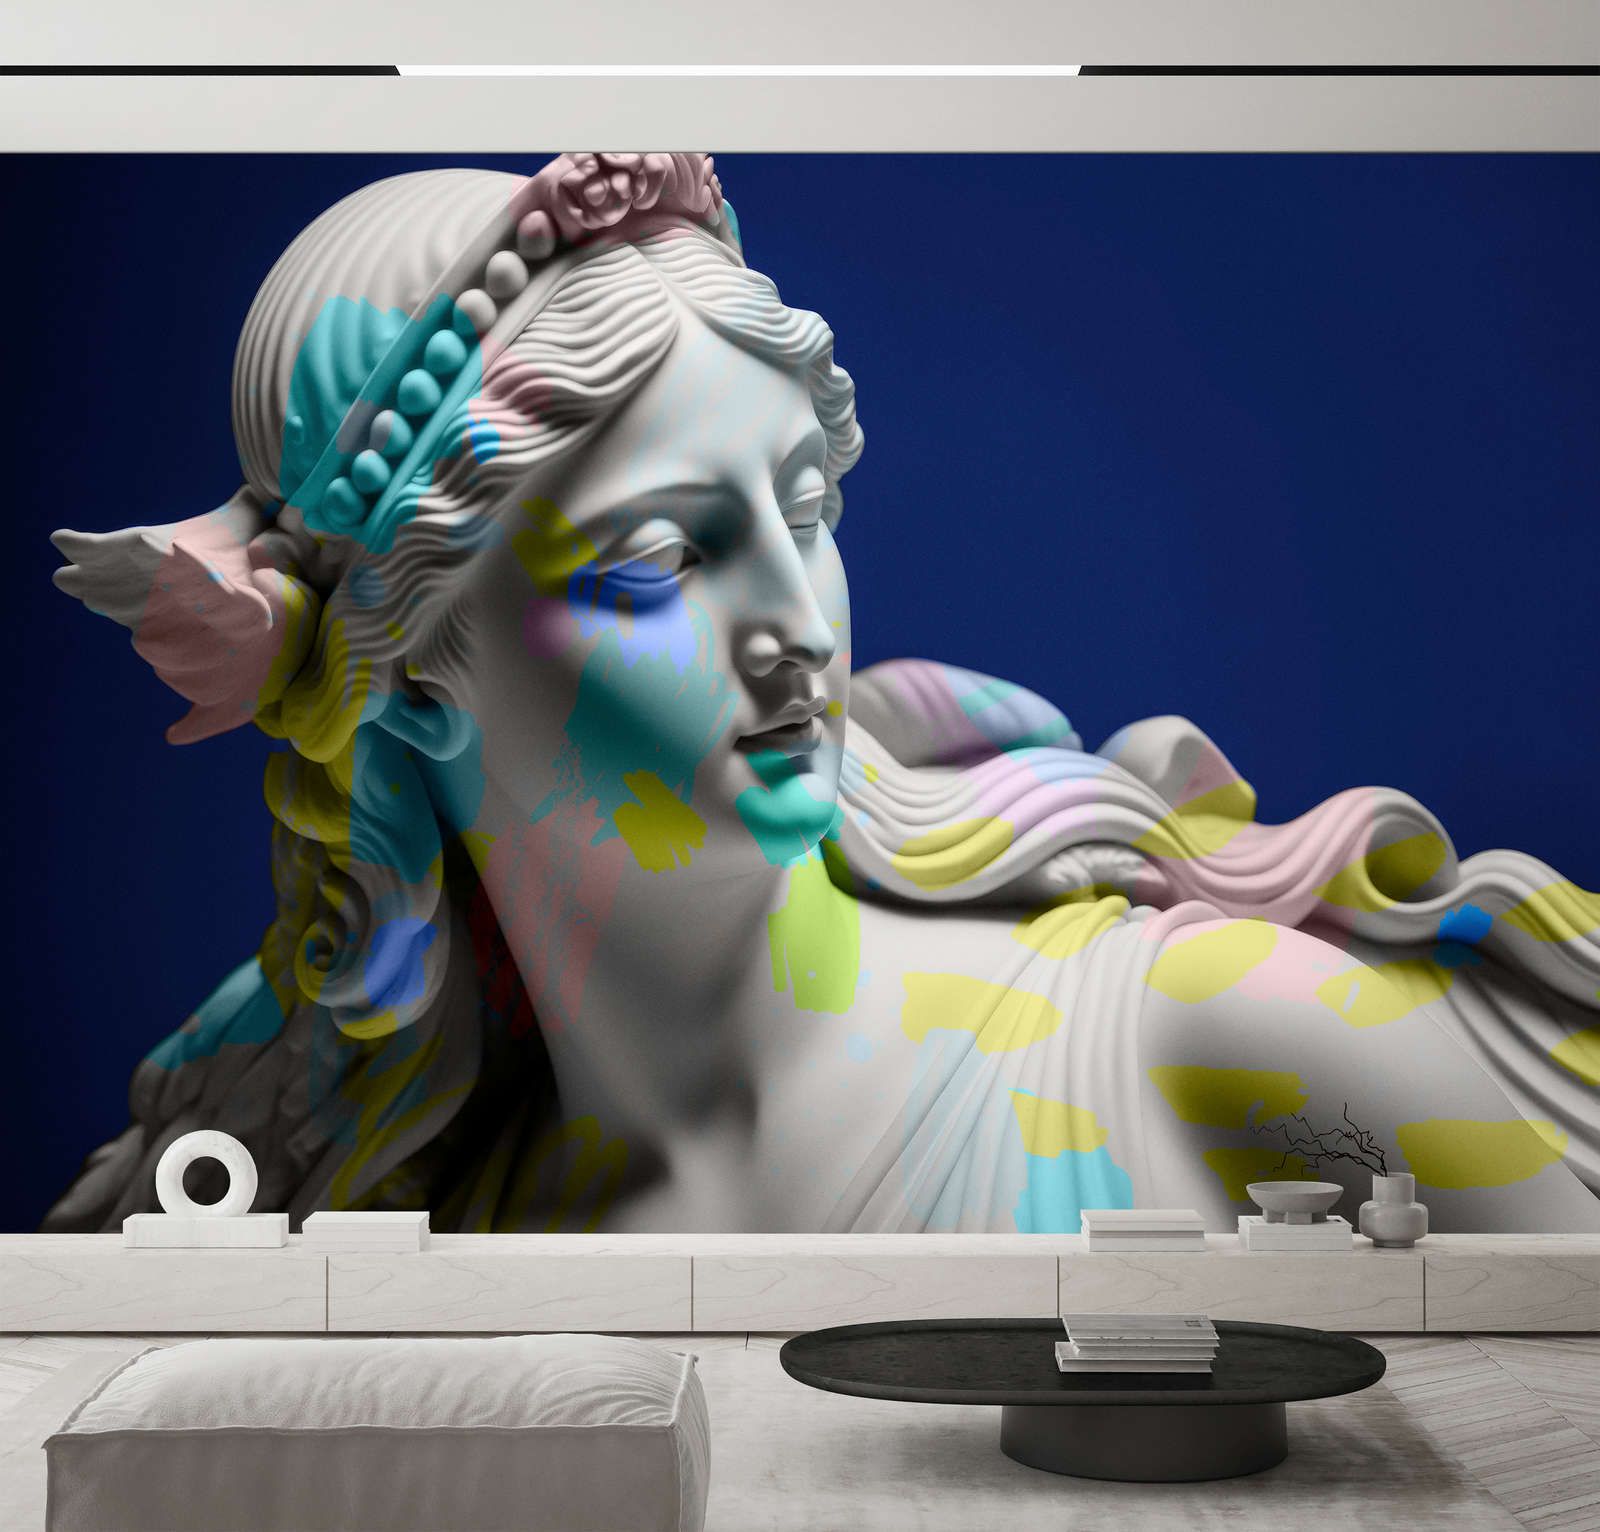             Digital behang »anthea« - vrouwelijk beeld met kleurrijke accenten - mat, glad vliesmateriaal
        